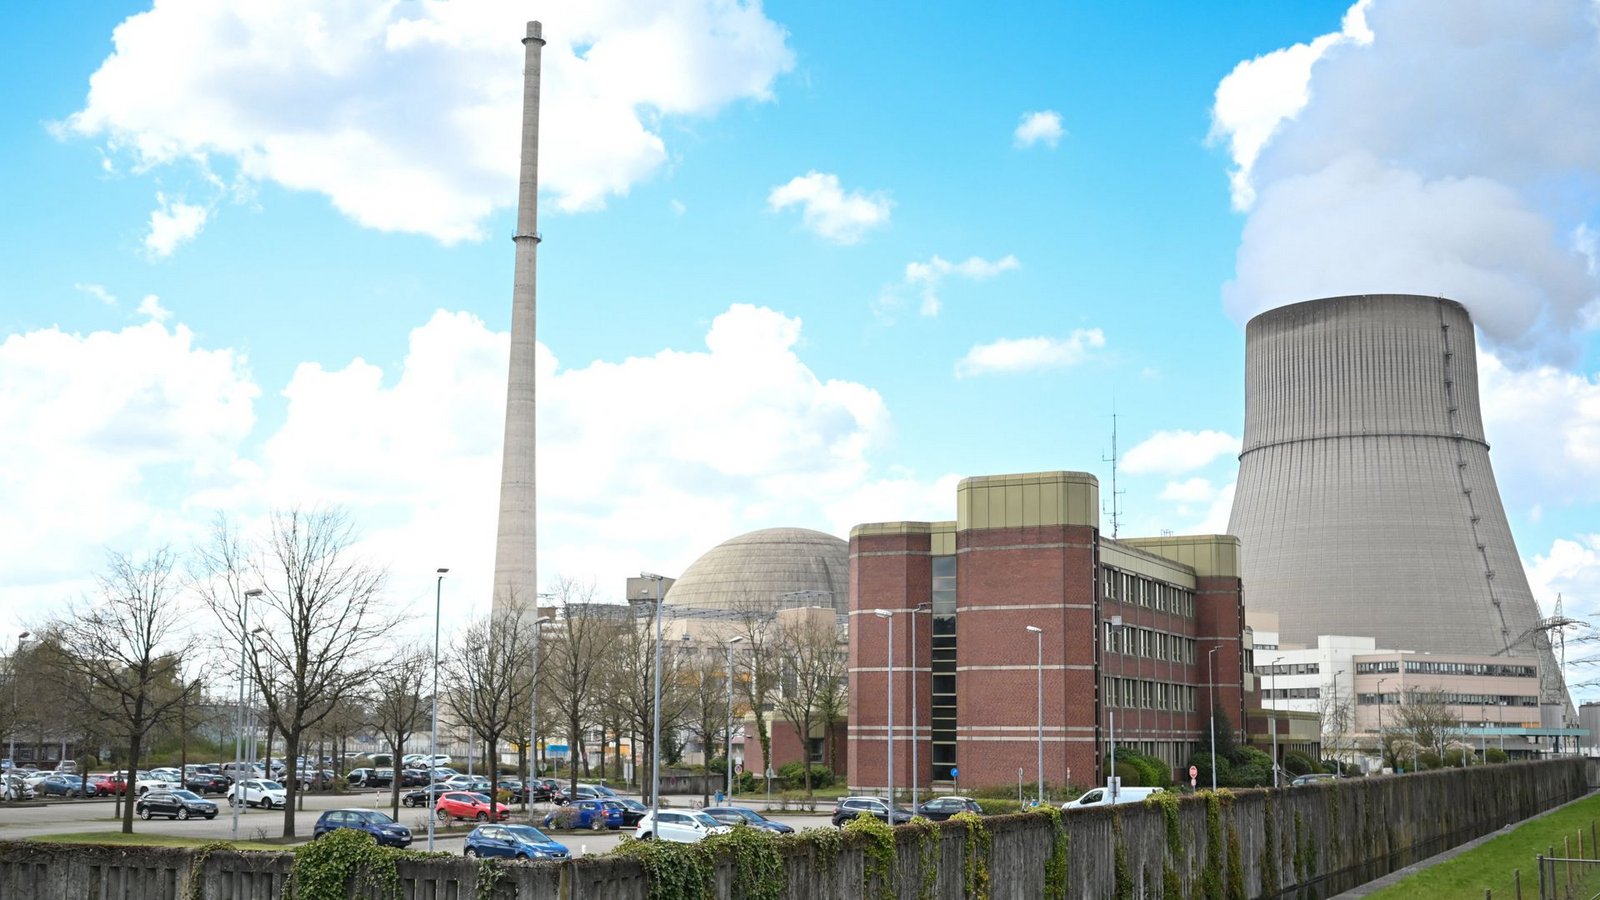 Das Kernkraftwerk Emsland in Niedersachsen. Laut einem Bericht sollen Mitarbeiter von Robert Habeck Zweifel an einen Atomausstieg ignoriert haben (Archivfoto).Foto: dpa/Lars Penning